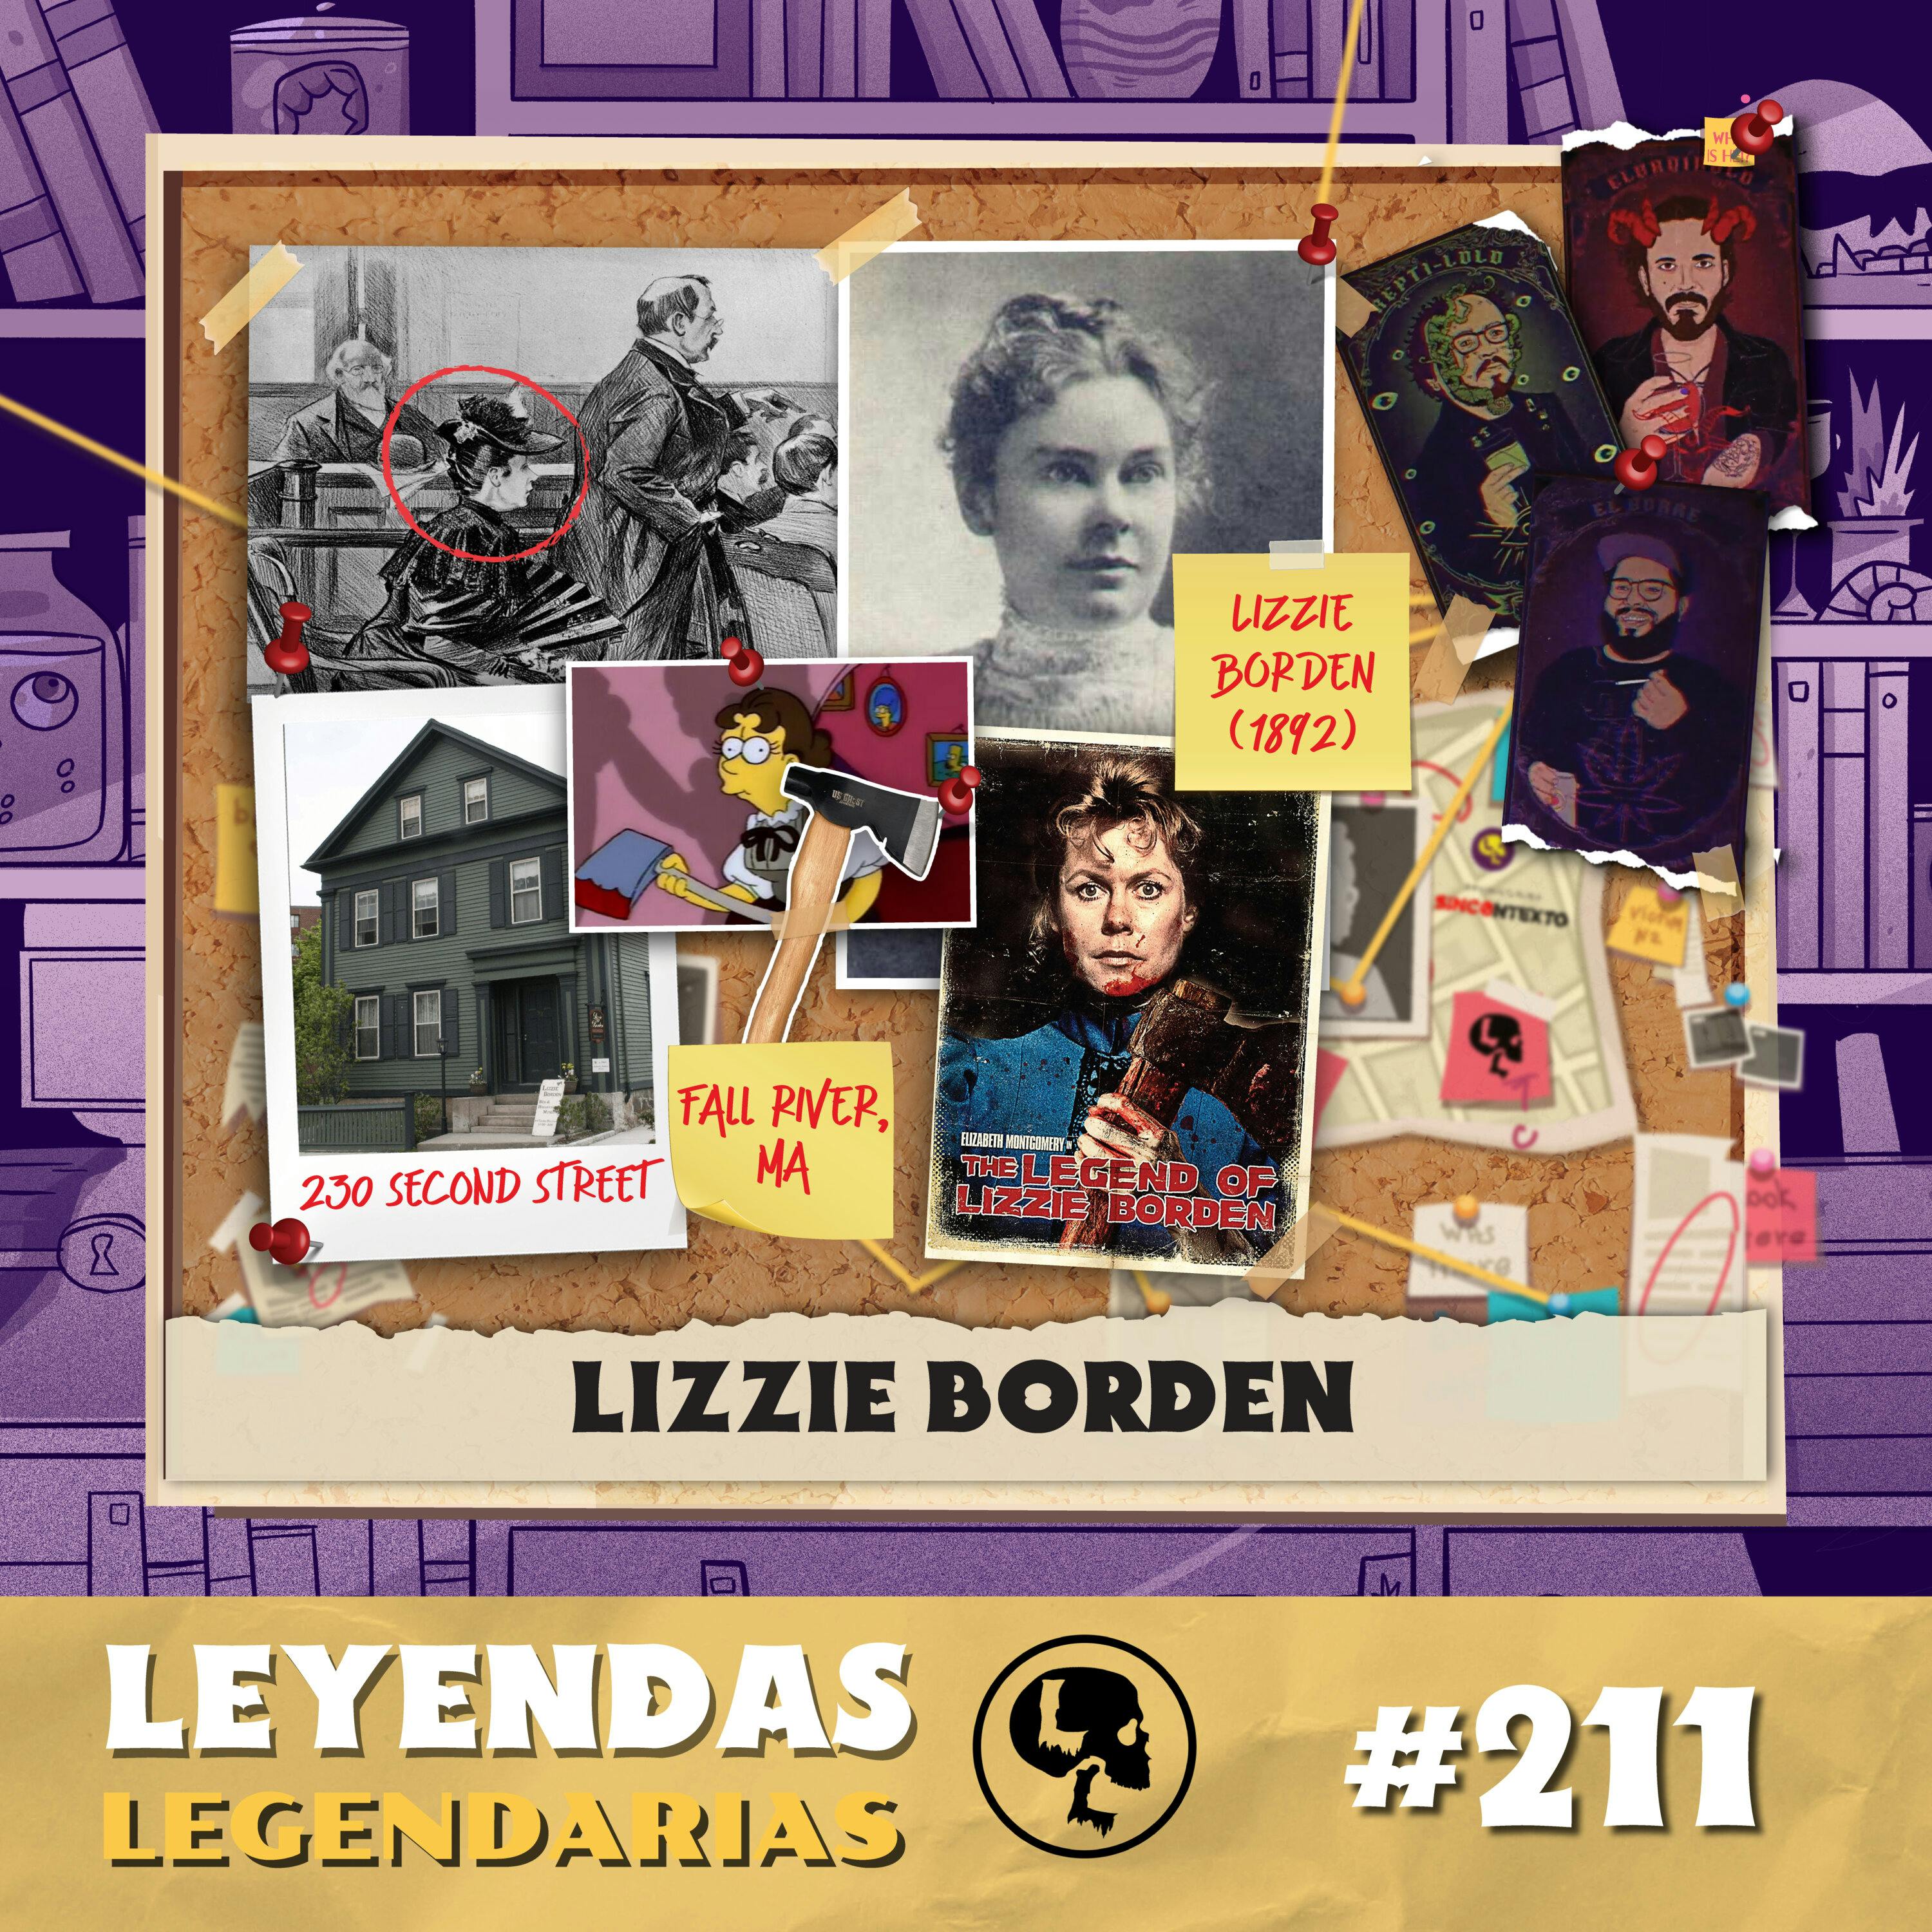 E211: Lizzie Borden